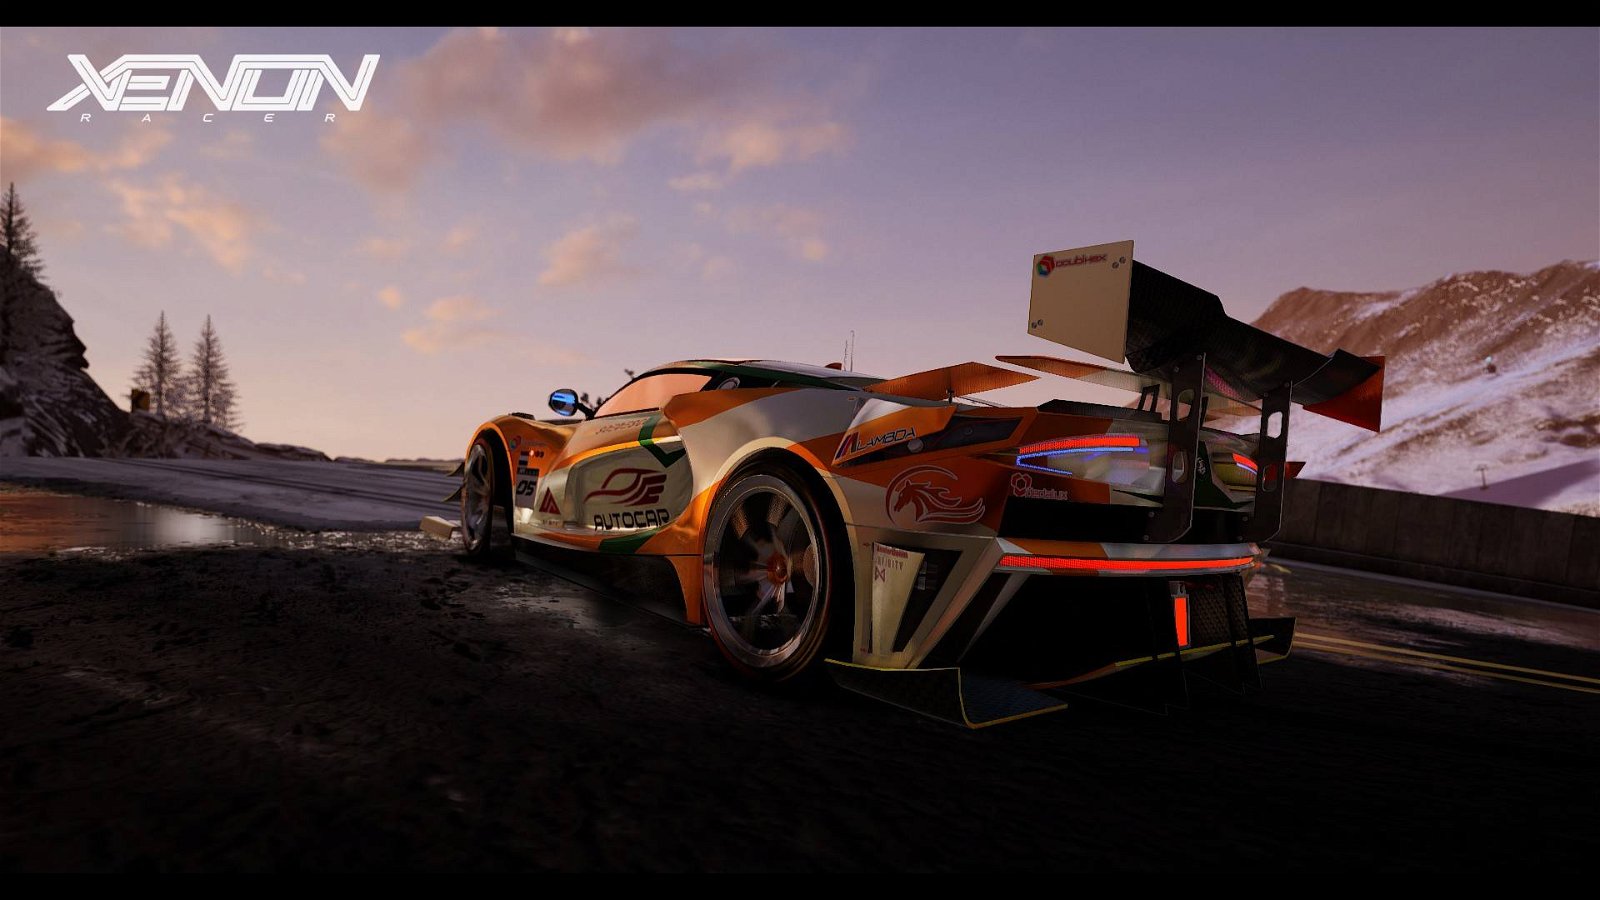 Immagine di Xenon Racer: ecco i dettagli del nuovo DLC gratis